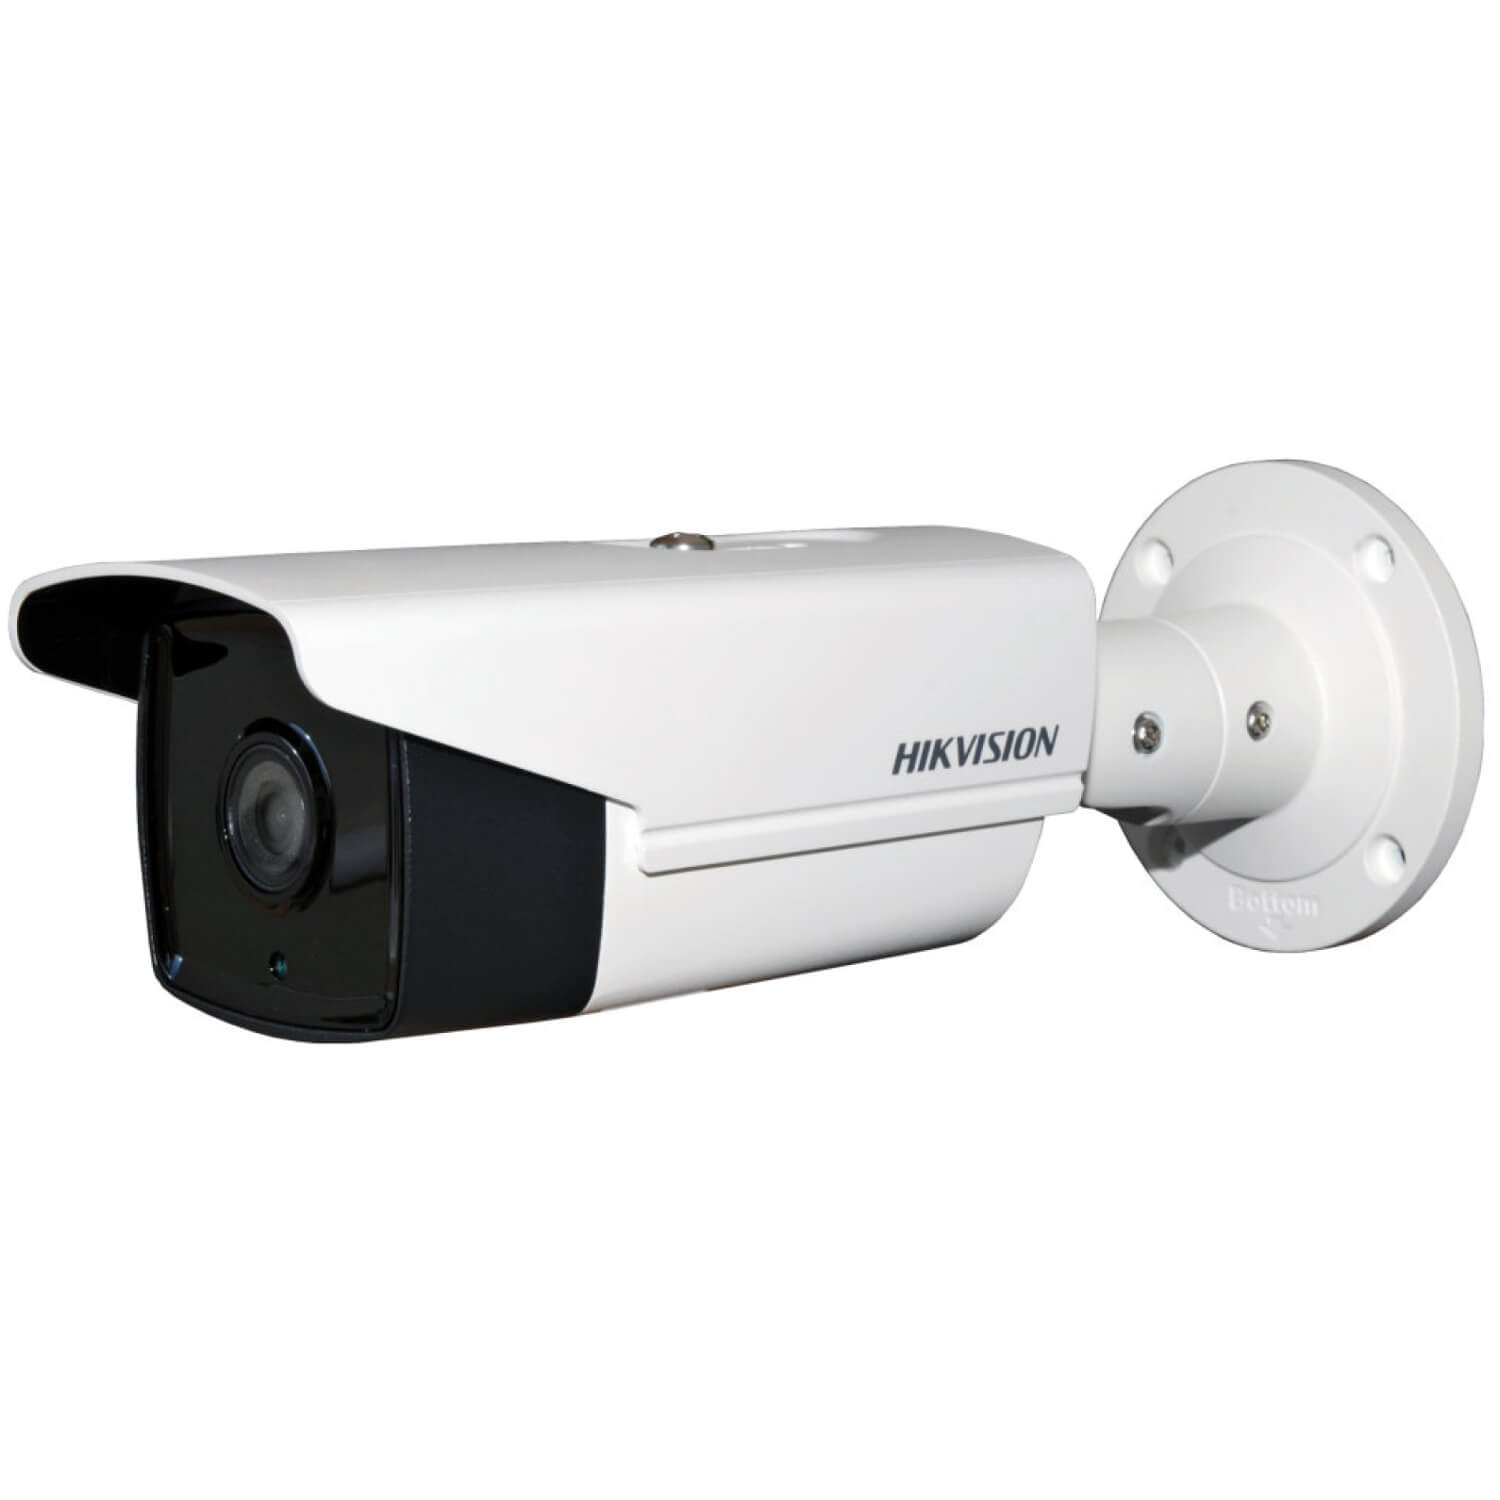  Camera de supraveghere Hikvision DS-2CE16D7T-IT5, 3.6mm, 1920 x 1080 